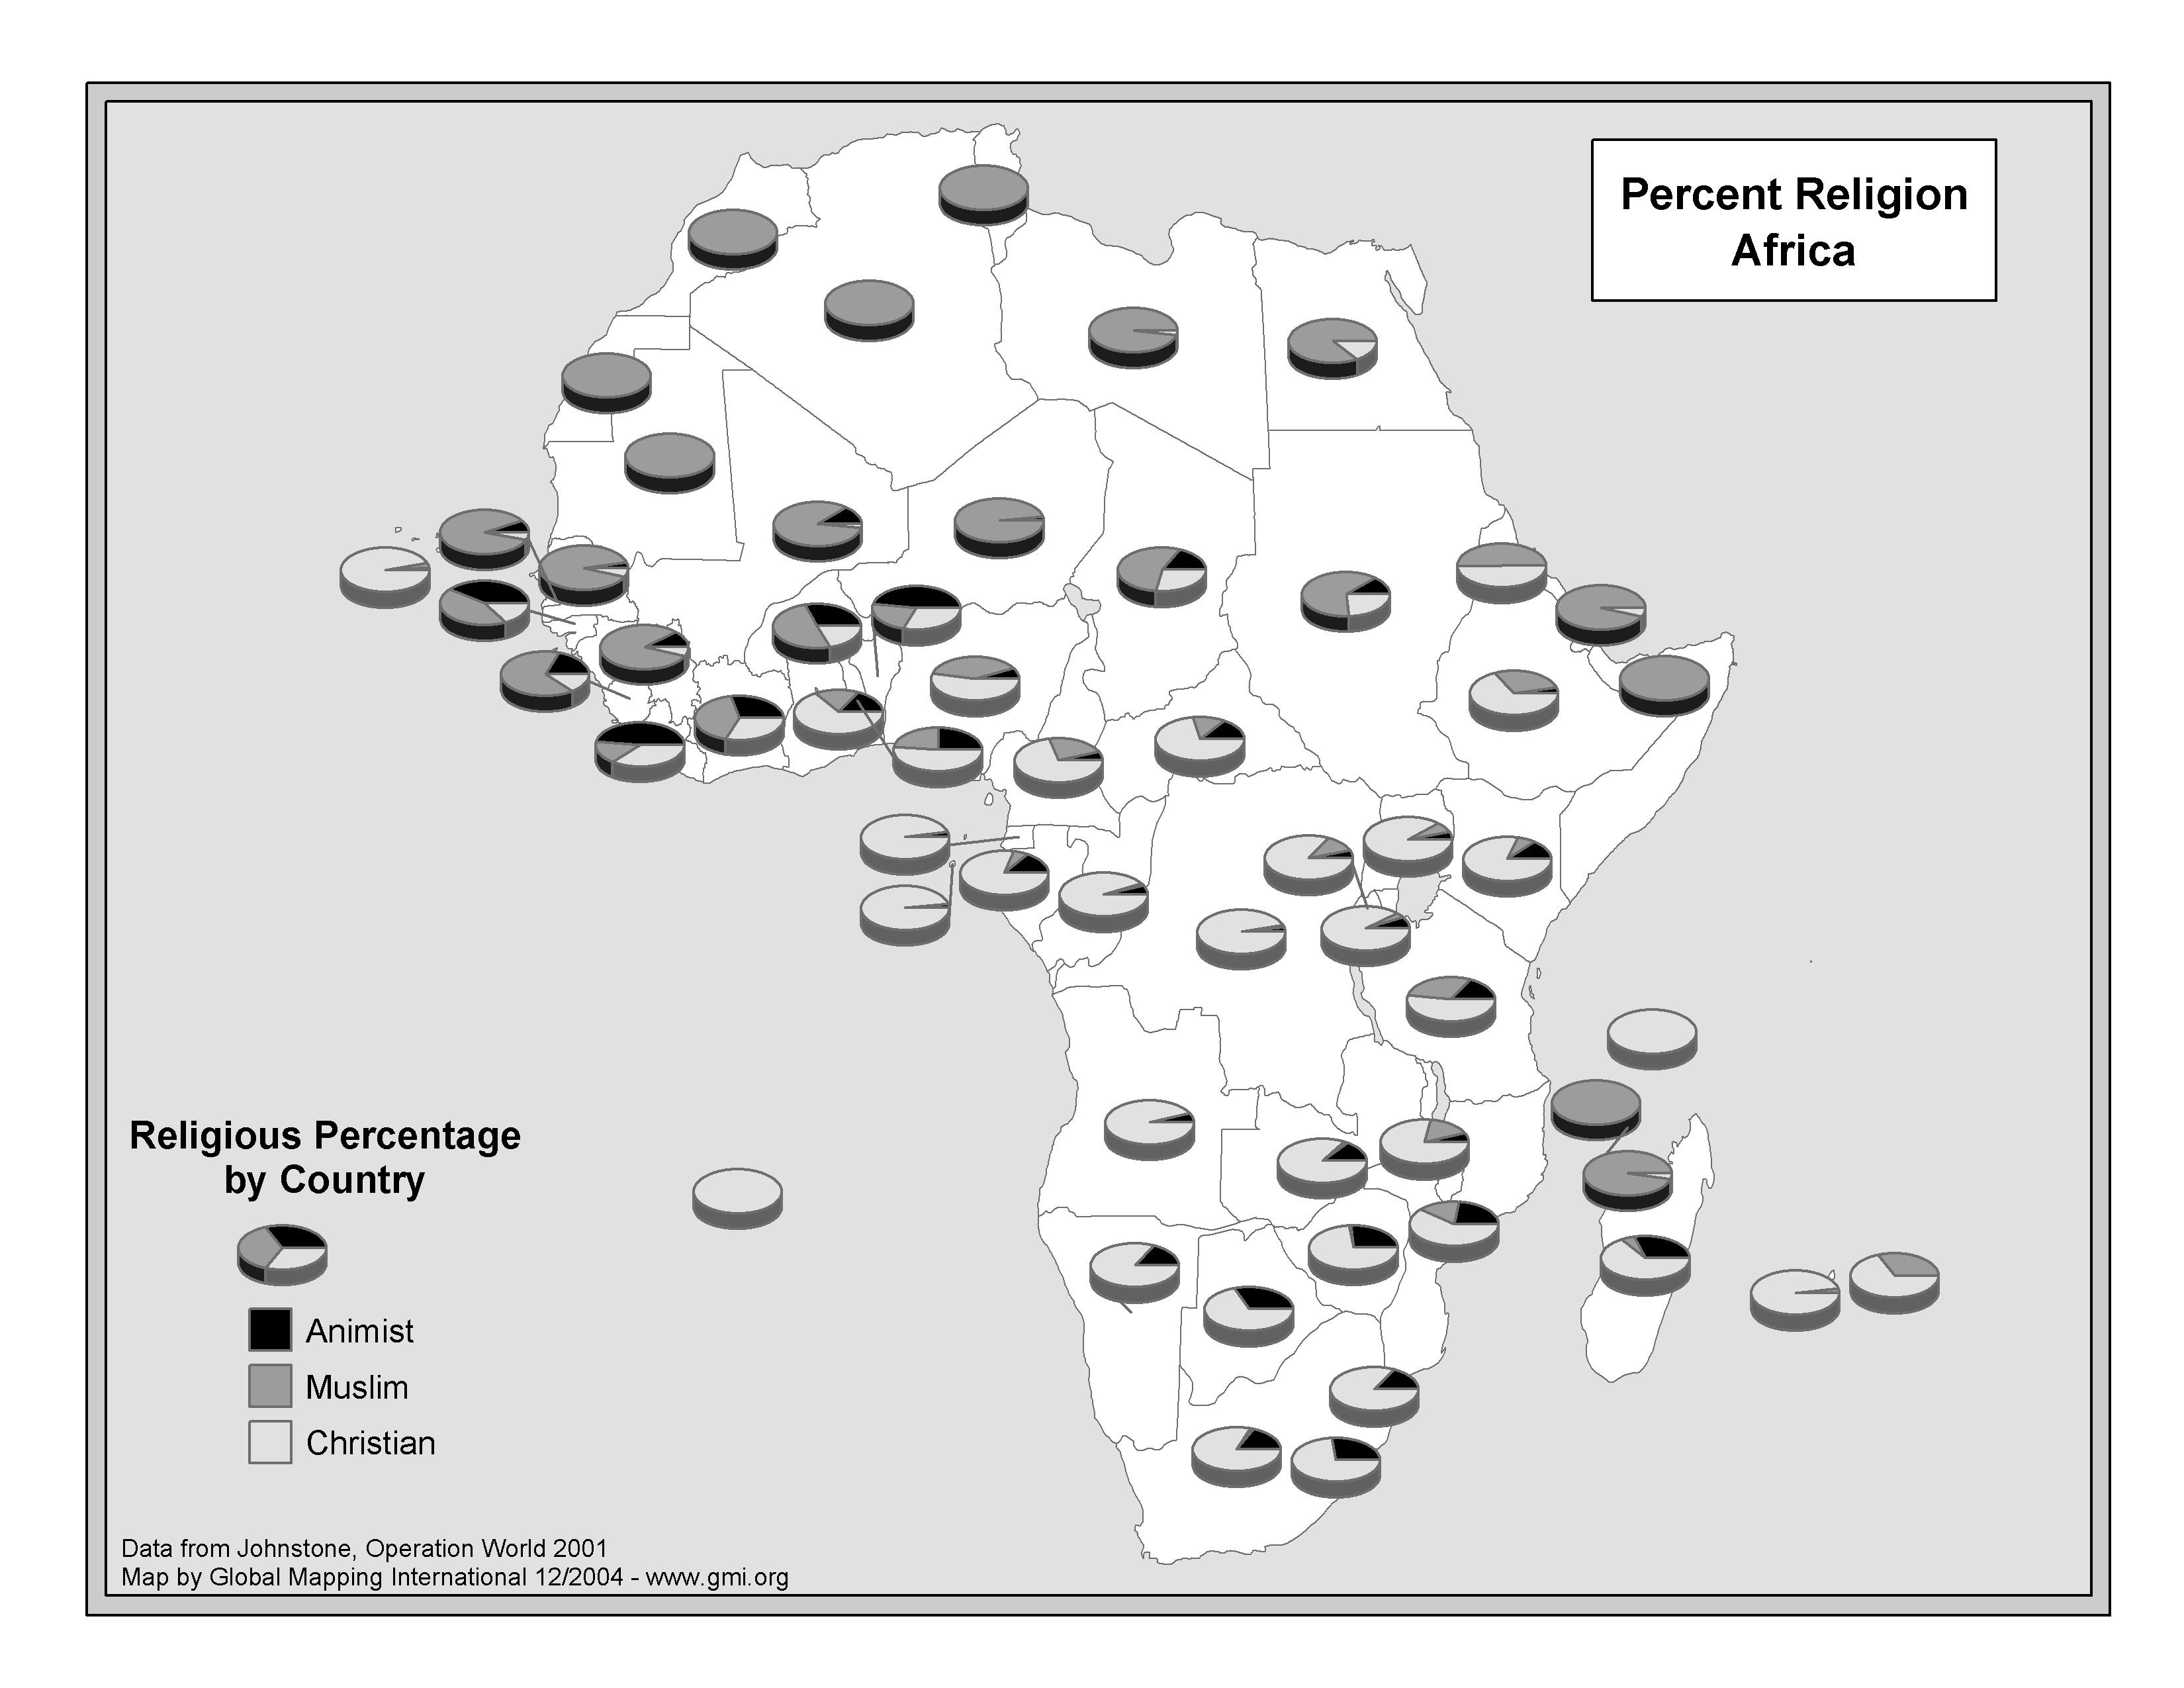 Percent Religion Africa